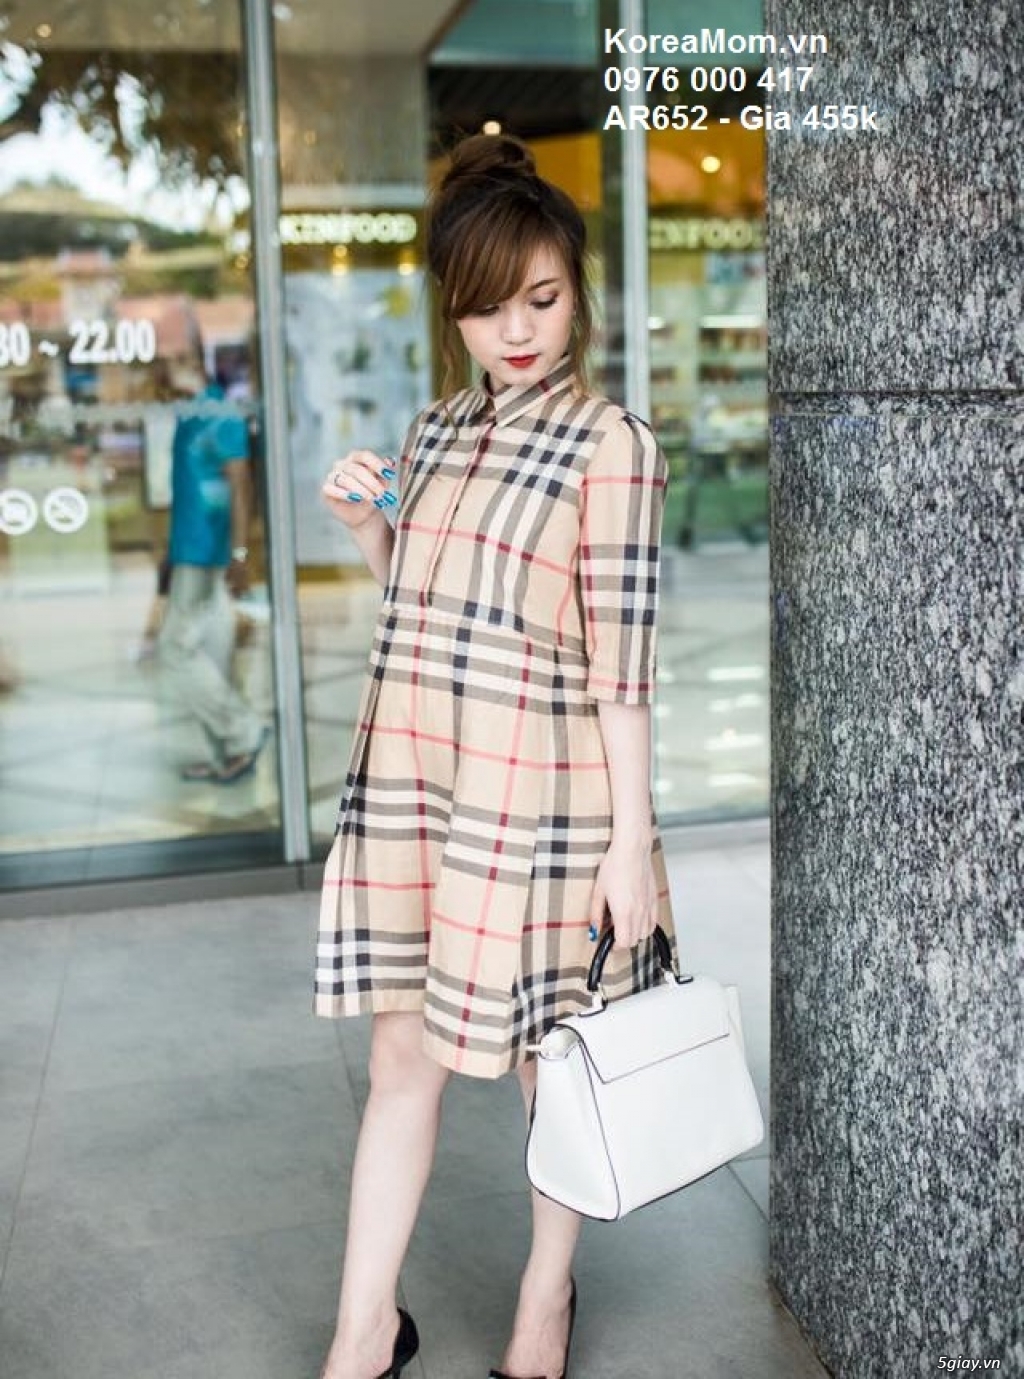 Đầm Bầu KOREA MOM chuyên sỉ và lẻ thời trang bầu Hàn Quốc với giá tốt nhất, thời trang sành điệu - 32